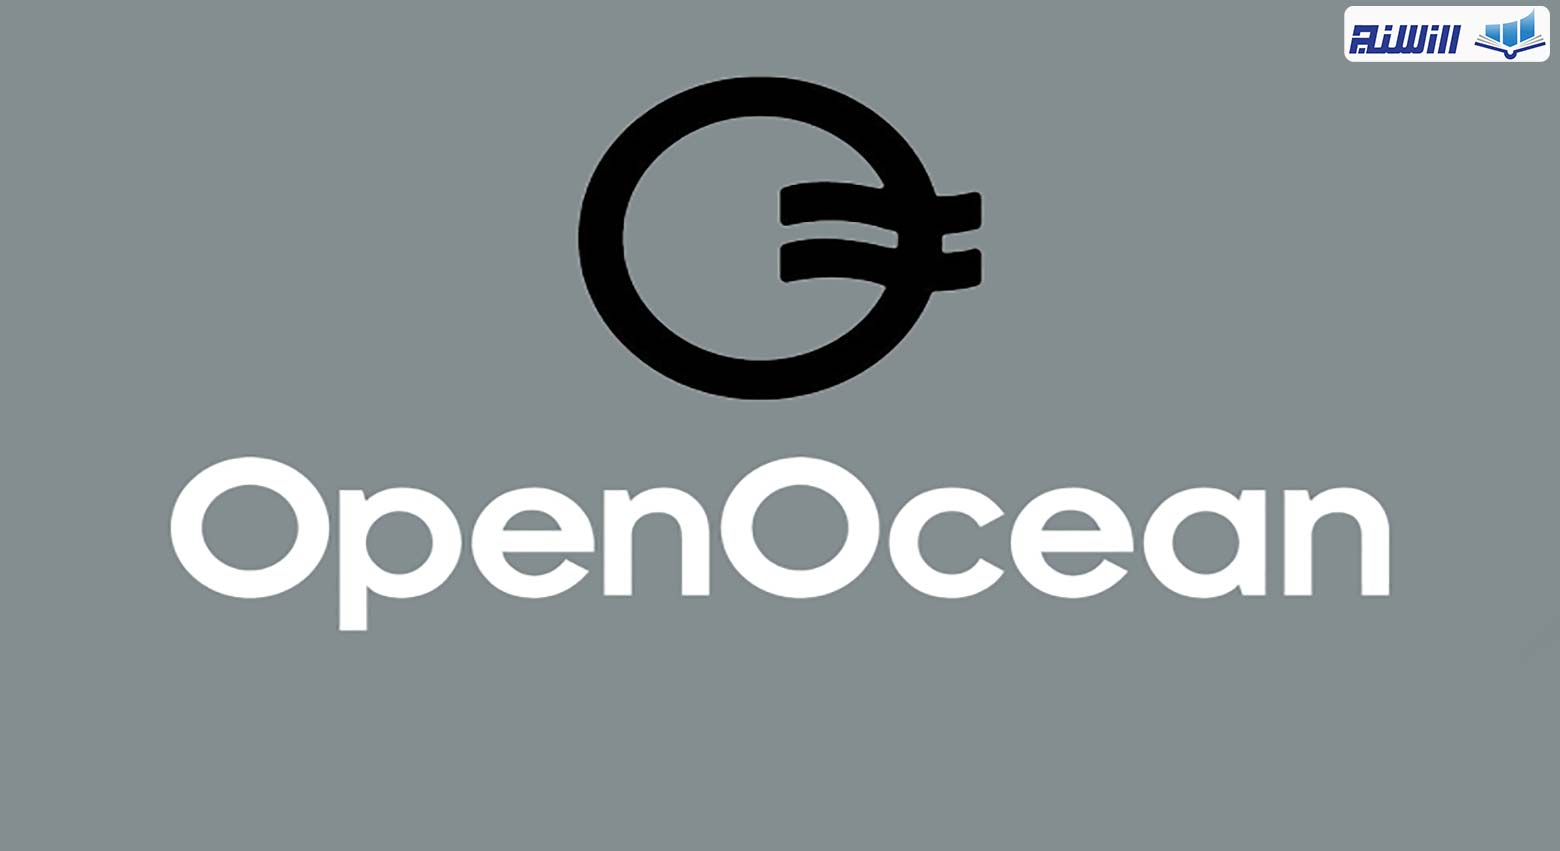 عملکرد پلتفرم Openocean